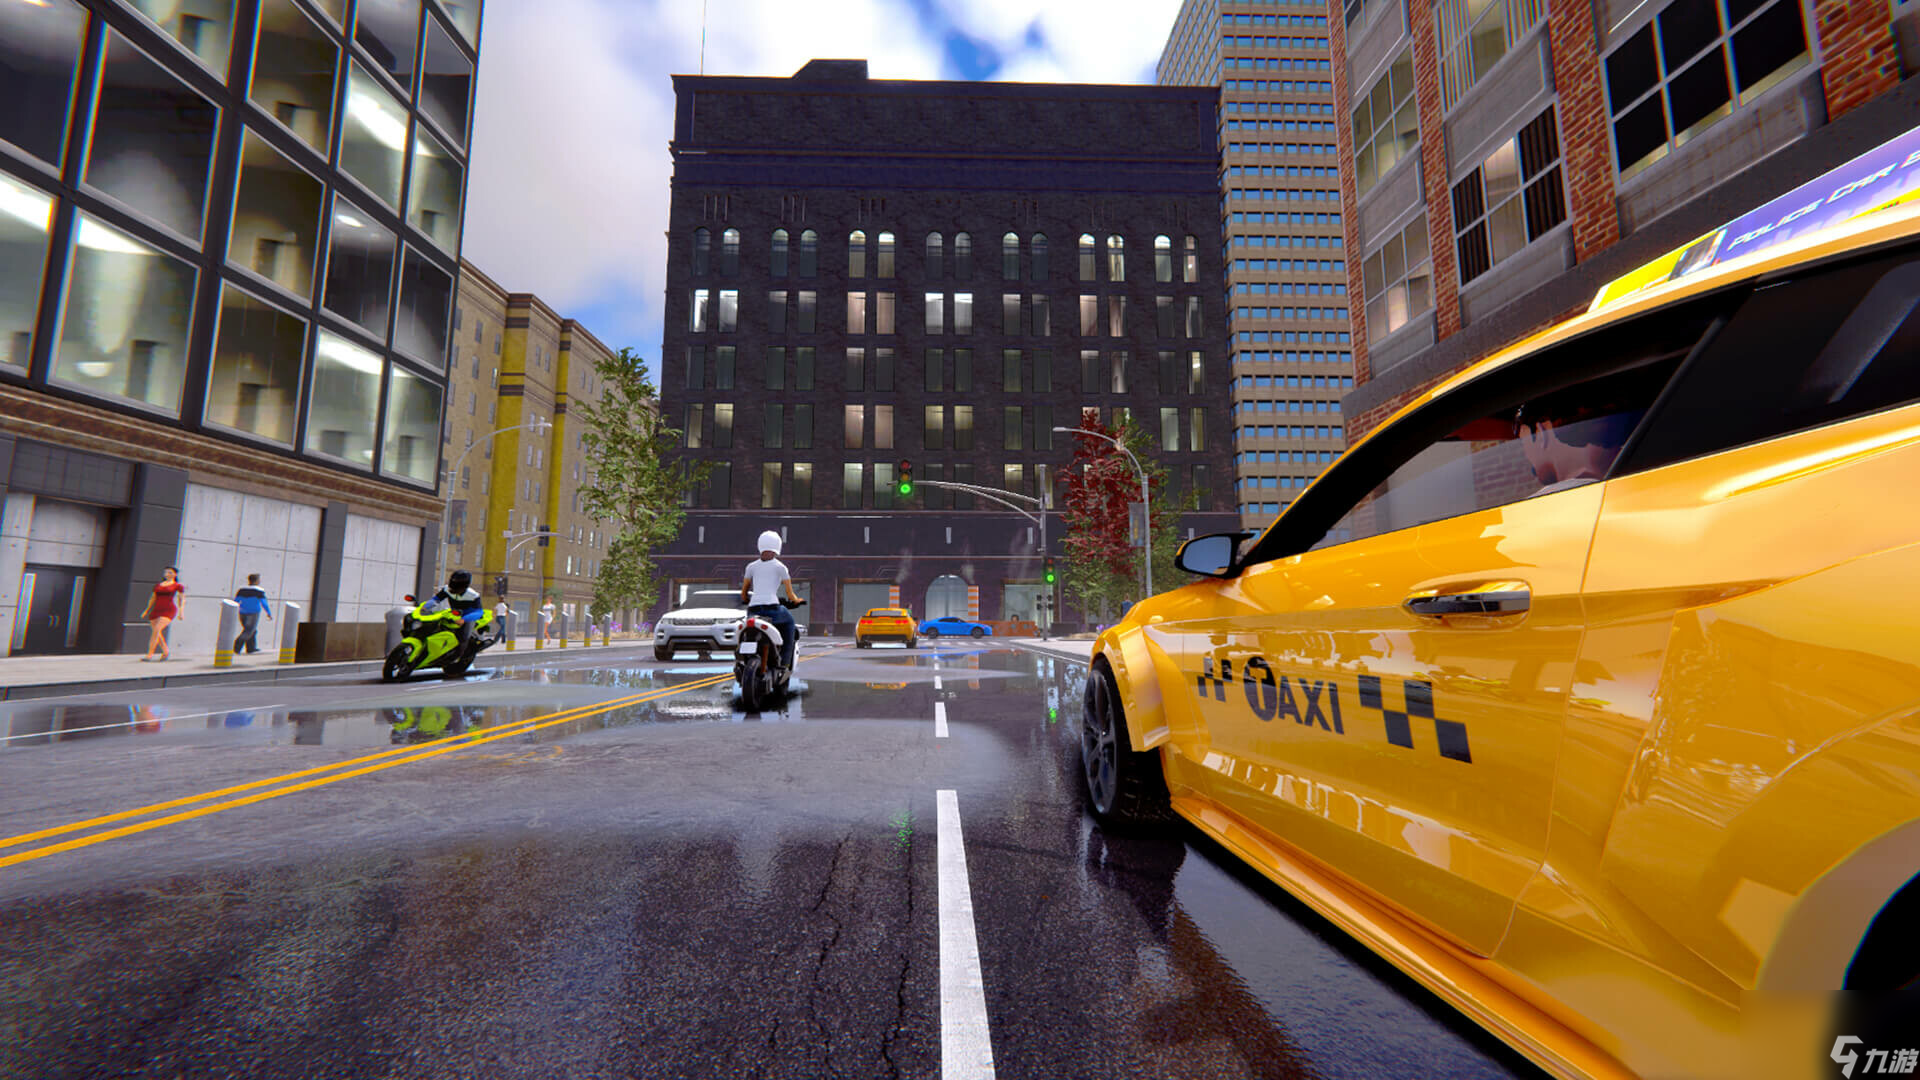 《城市出租车模拟器》Steam页面上线 支持简体中文